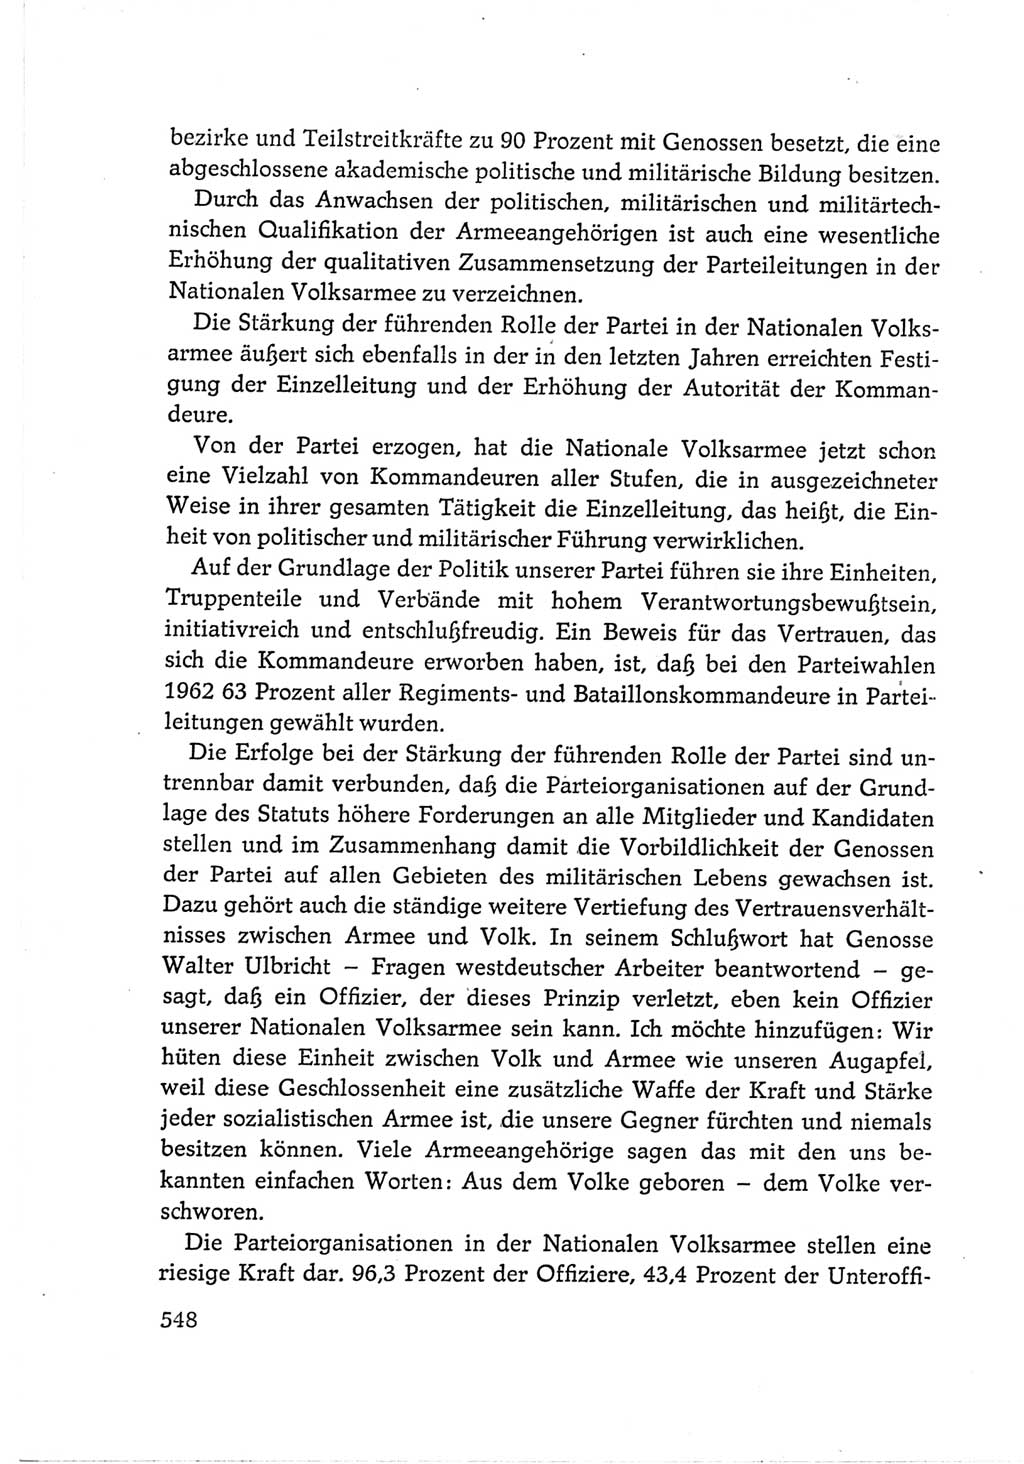 Protokoll der Verhandlungen des Ⅵ. Parteitages der Sozialistischen Einheitspartei Deutschlands (SED) [Deutsche Demokratische Republik (DDR)] 1963, Band Ⅲ, Seite 548 (Prot. Verh. Ⅵ. PT SED DDR 1963, Bd. Ⅲ, S. 548)